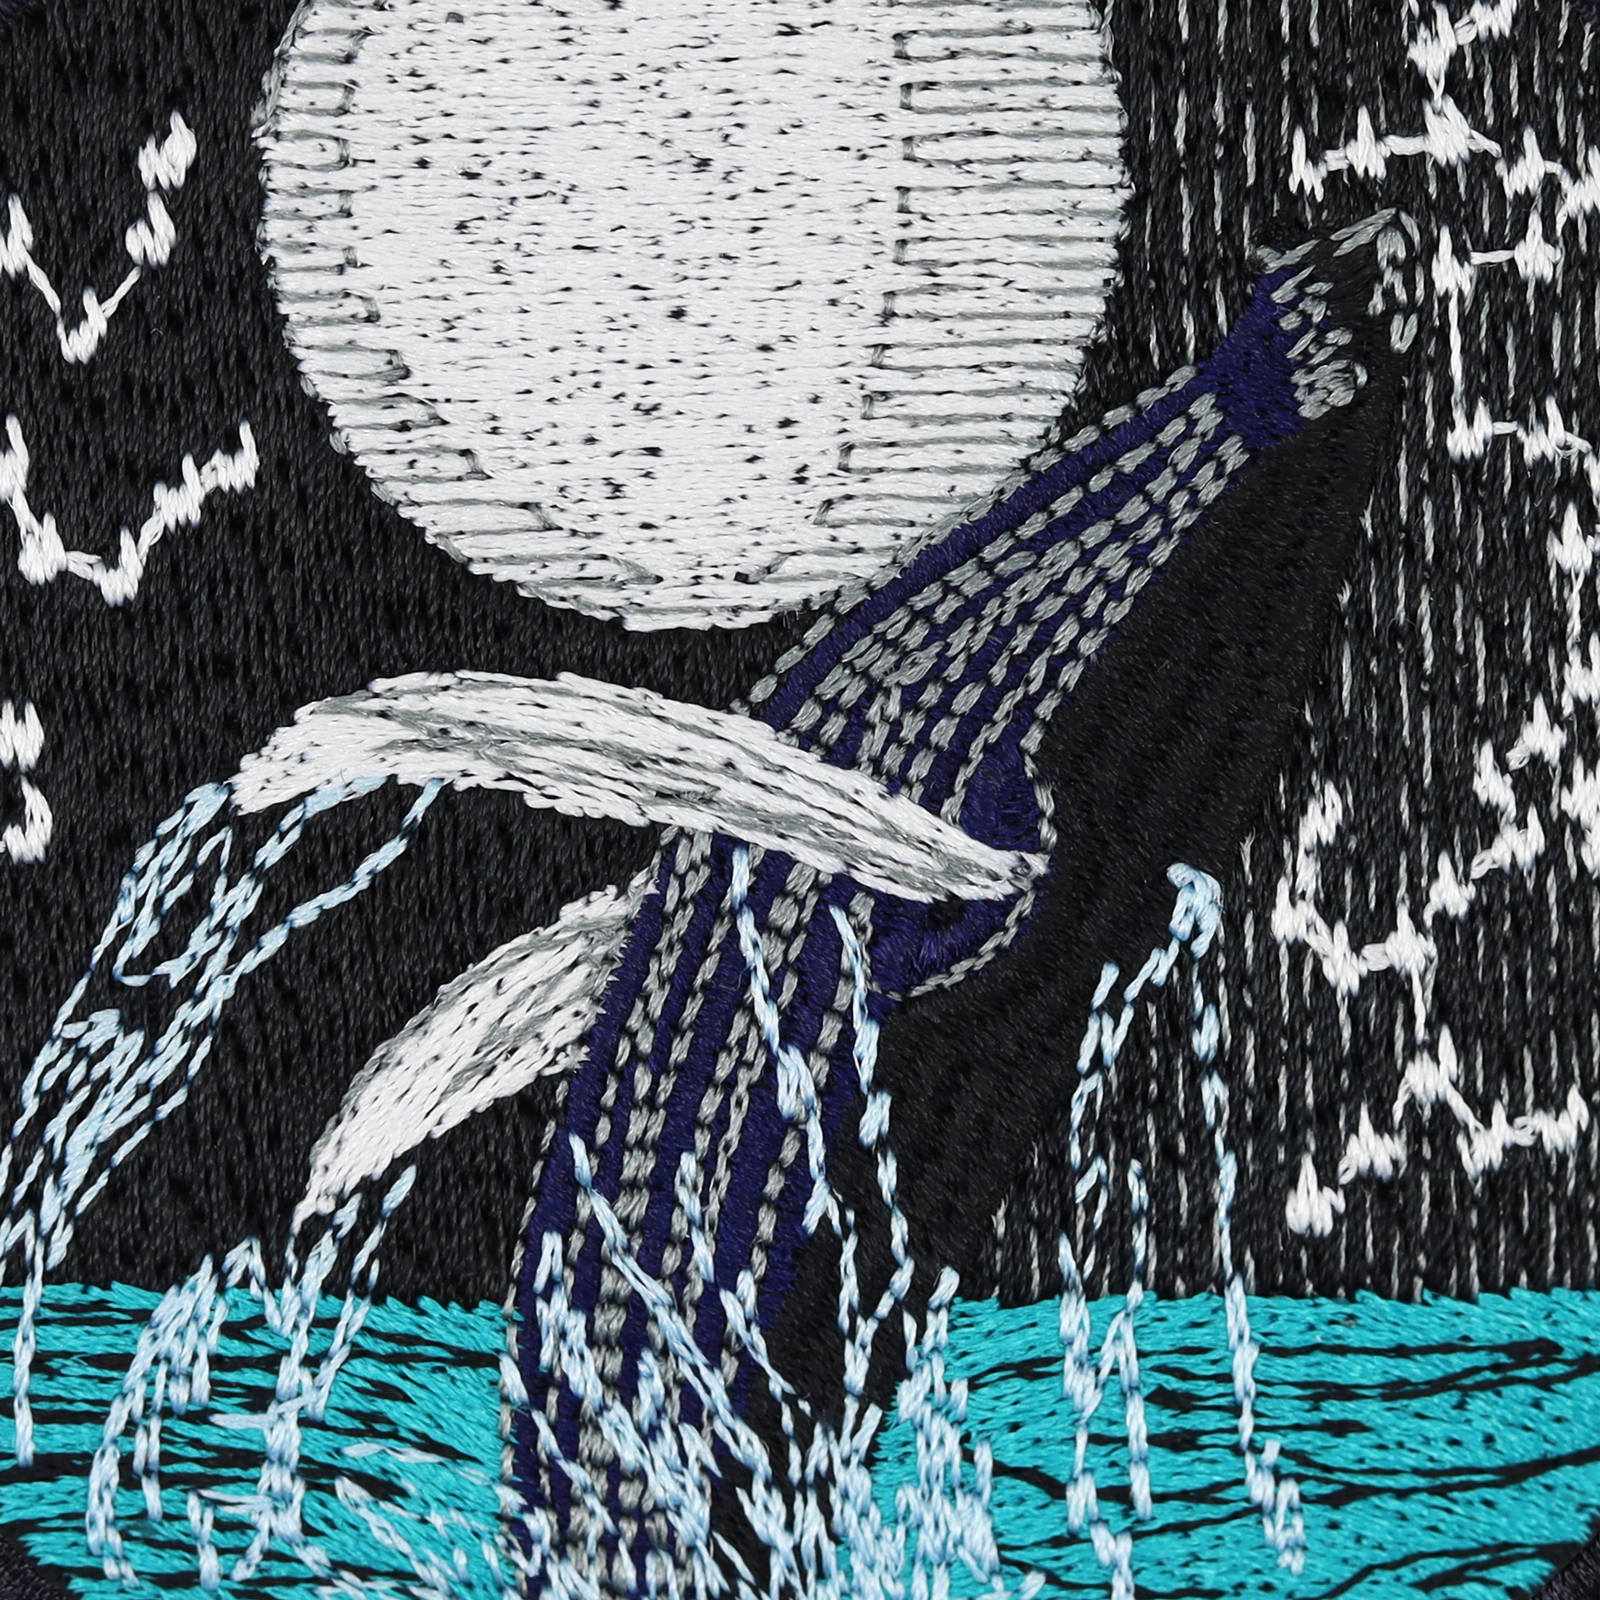 Blauwal im Mondlicht - Patch